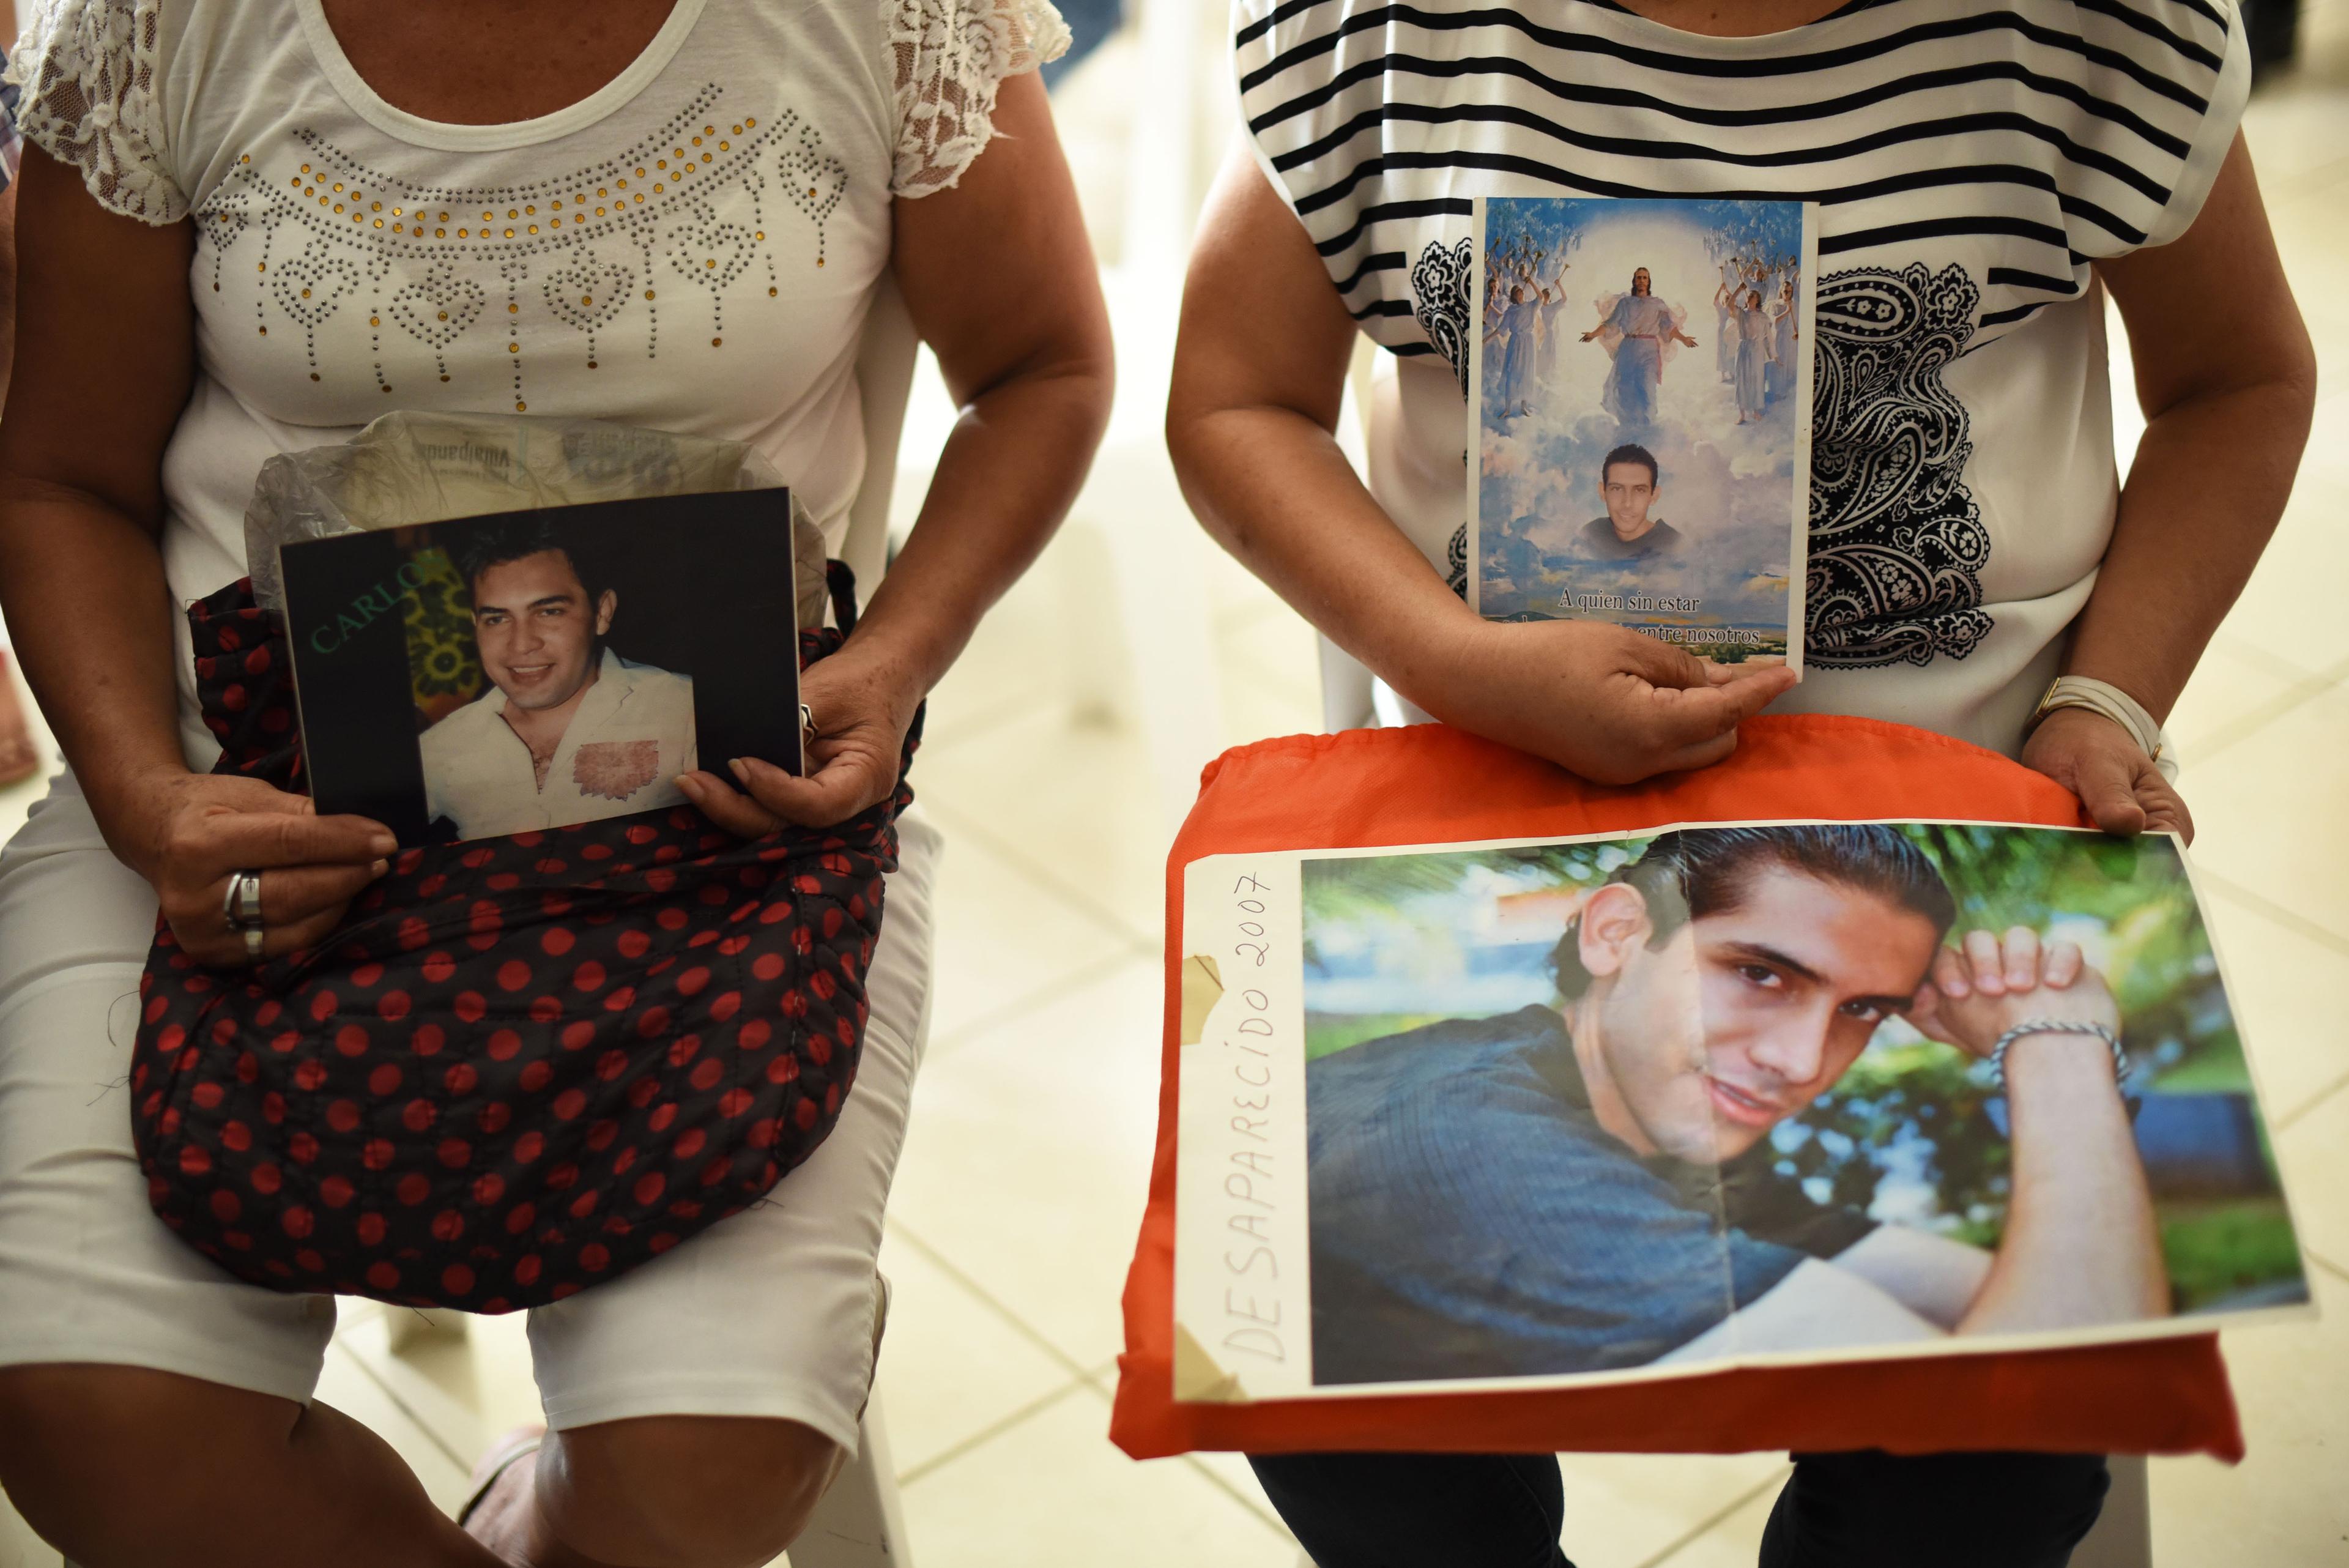 El 10 de mayo “no hay nada que celebrar”: Madres de desaparecidos